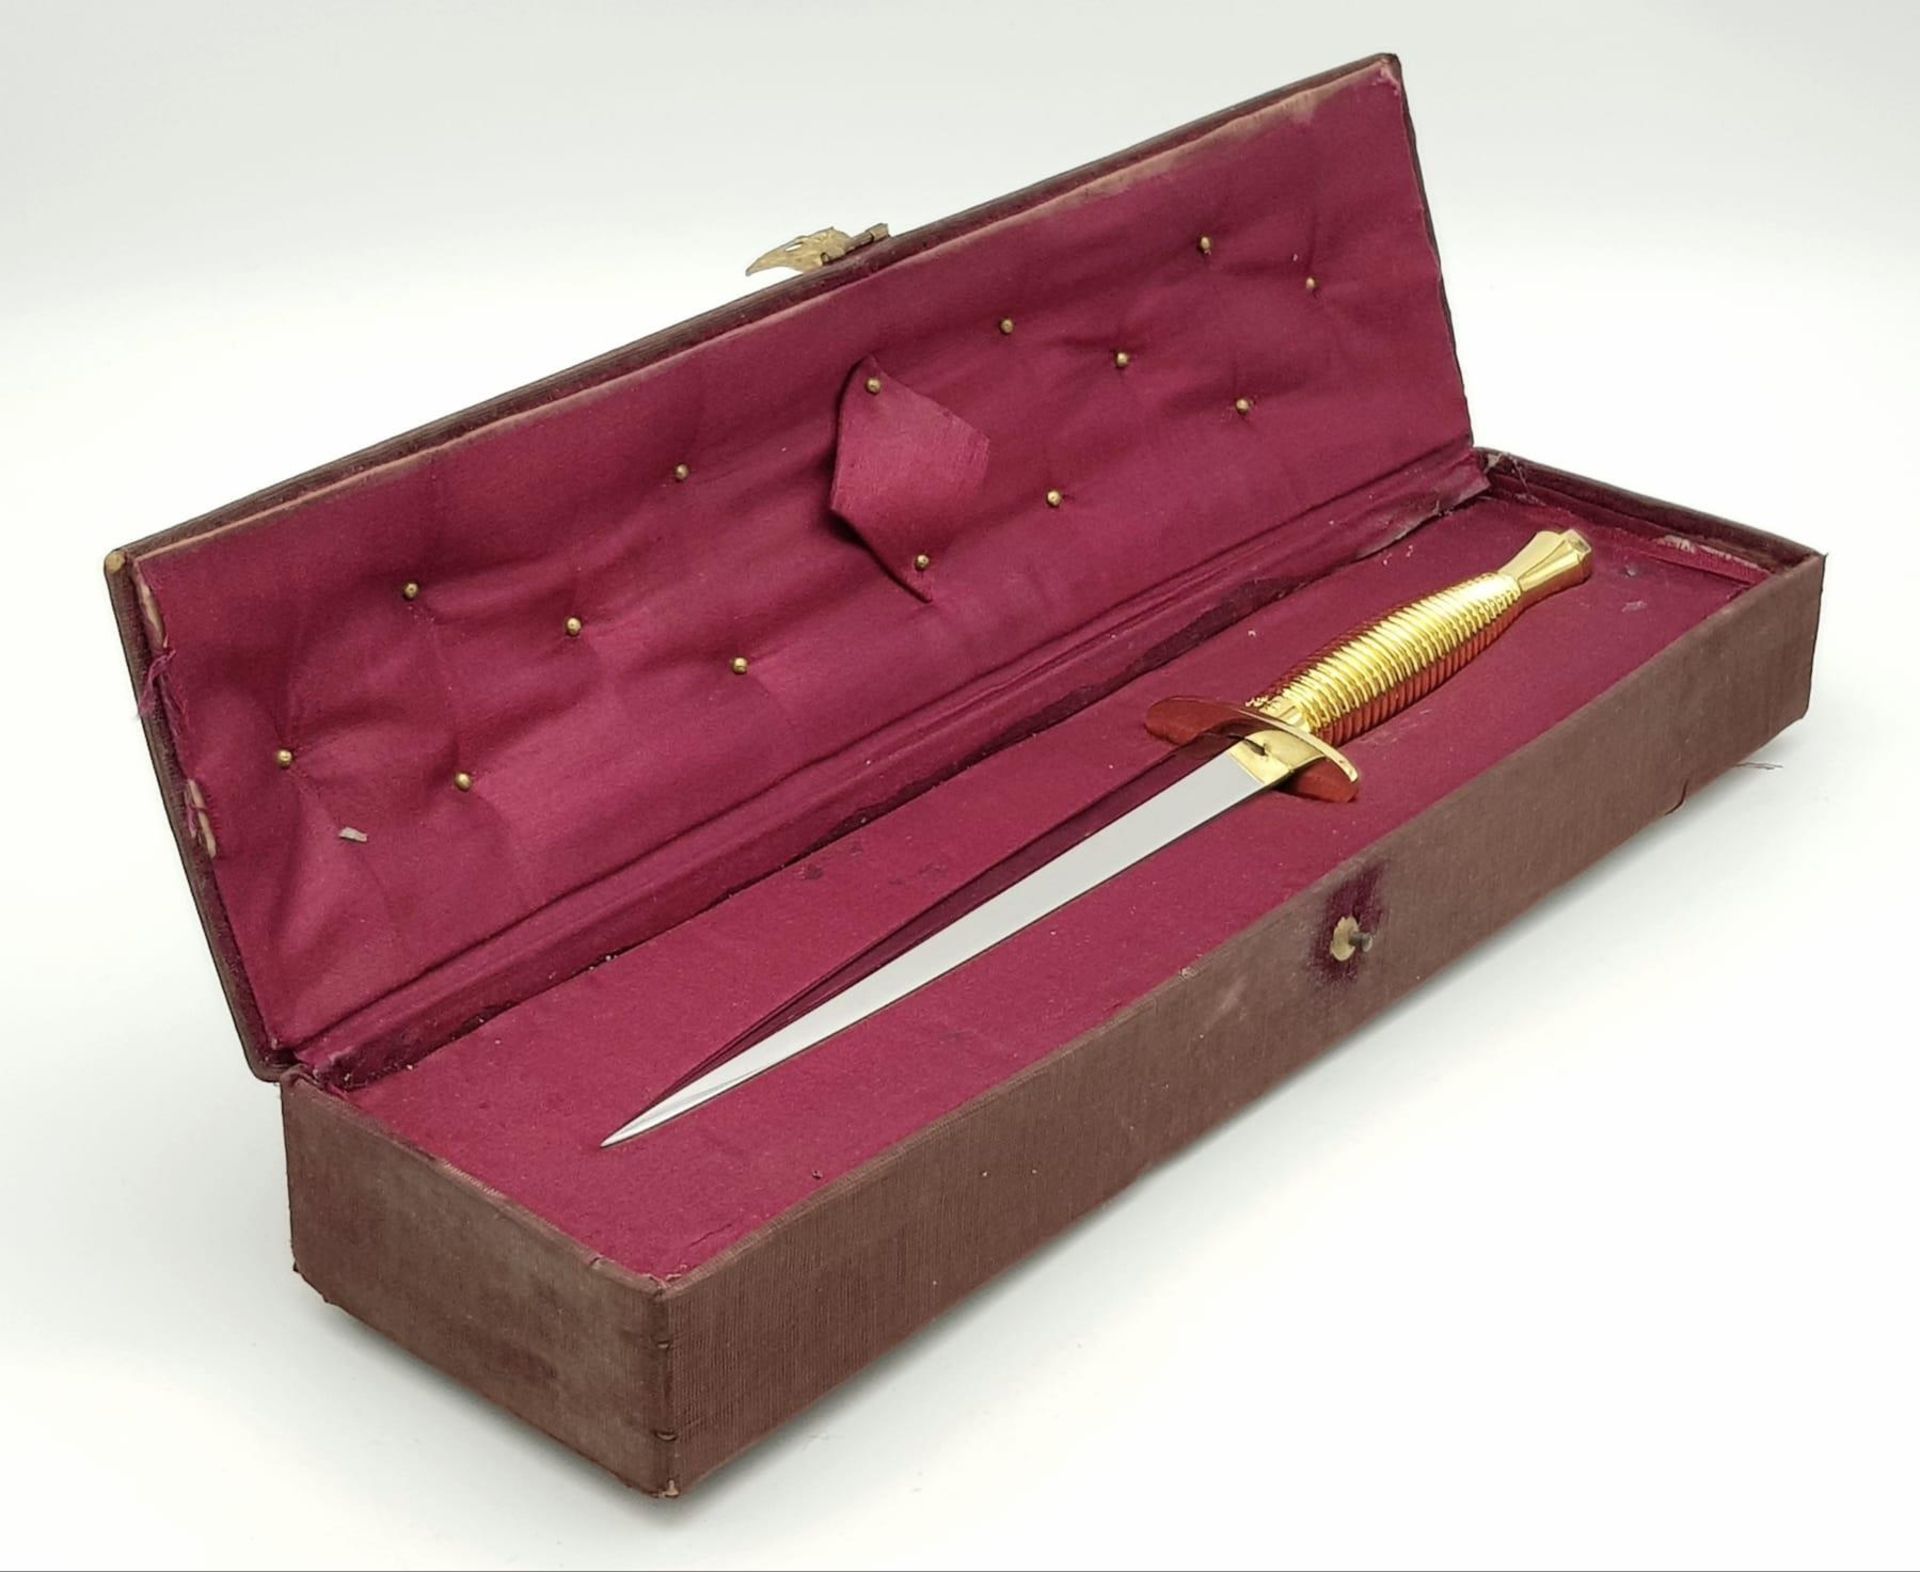 Presentation Commando Dagger in ornate box. - Image 5 of 9